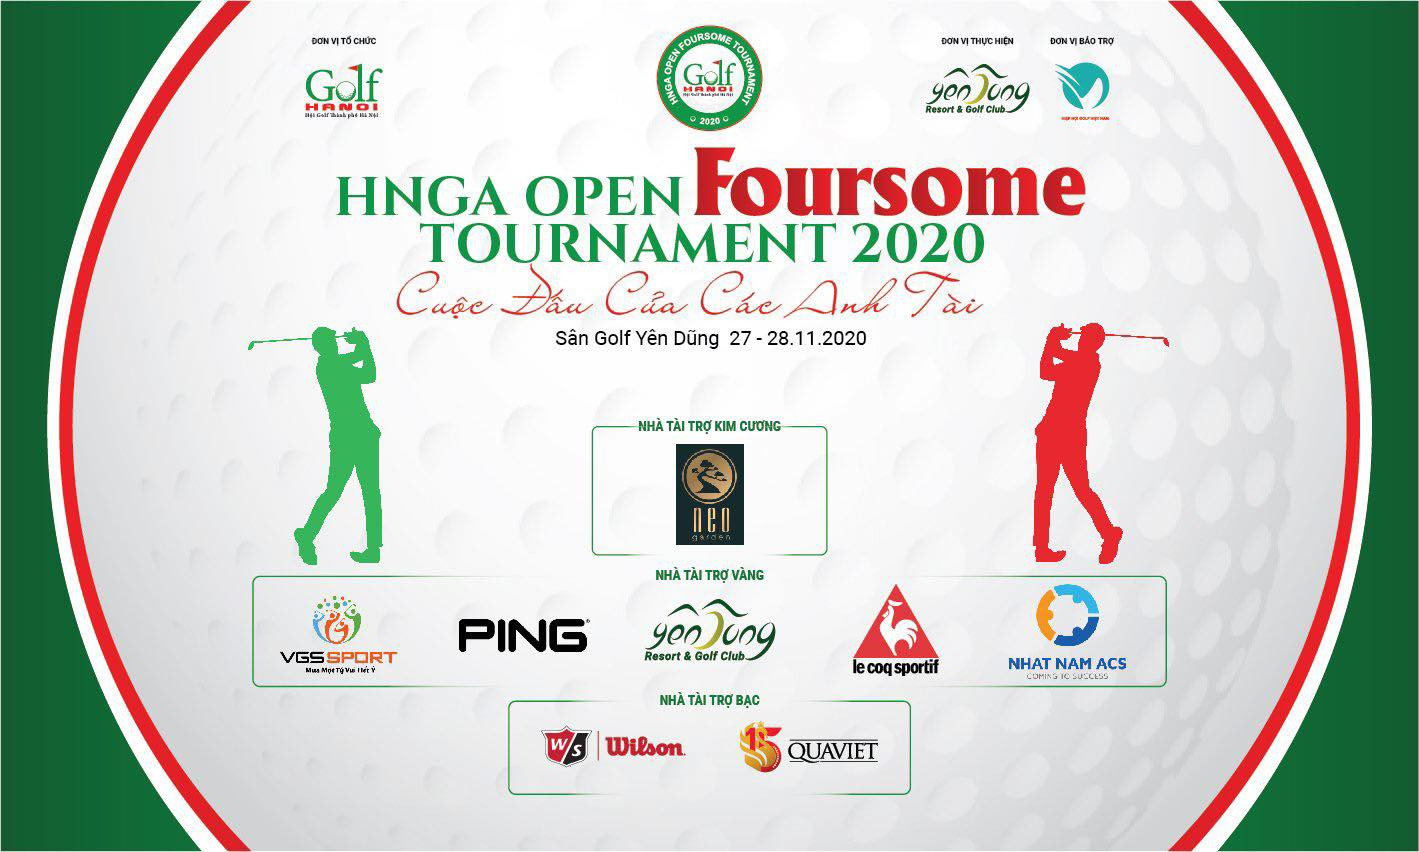 Giải golf “HNGA Open Foursome Tournament 2020” đã sẵn sàng chào đón các golfer đến giao lưu và tranh tài - Ảnh 1.